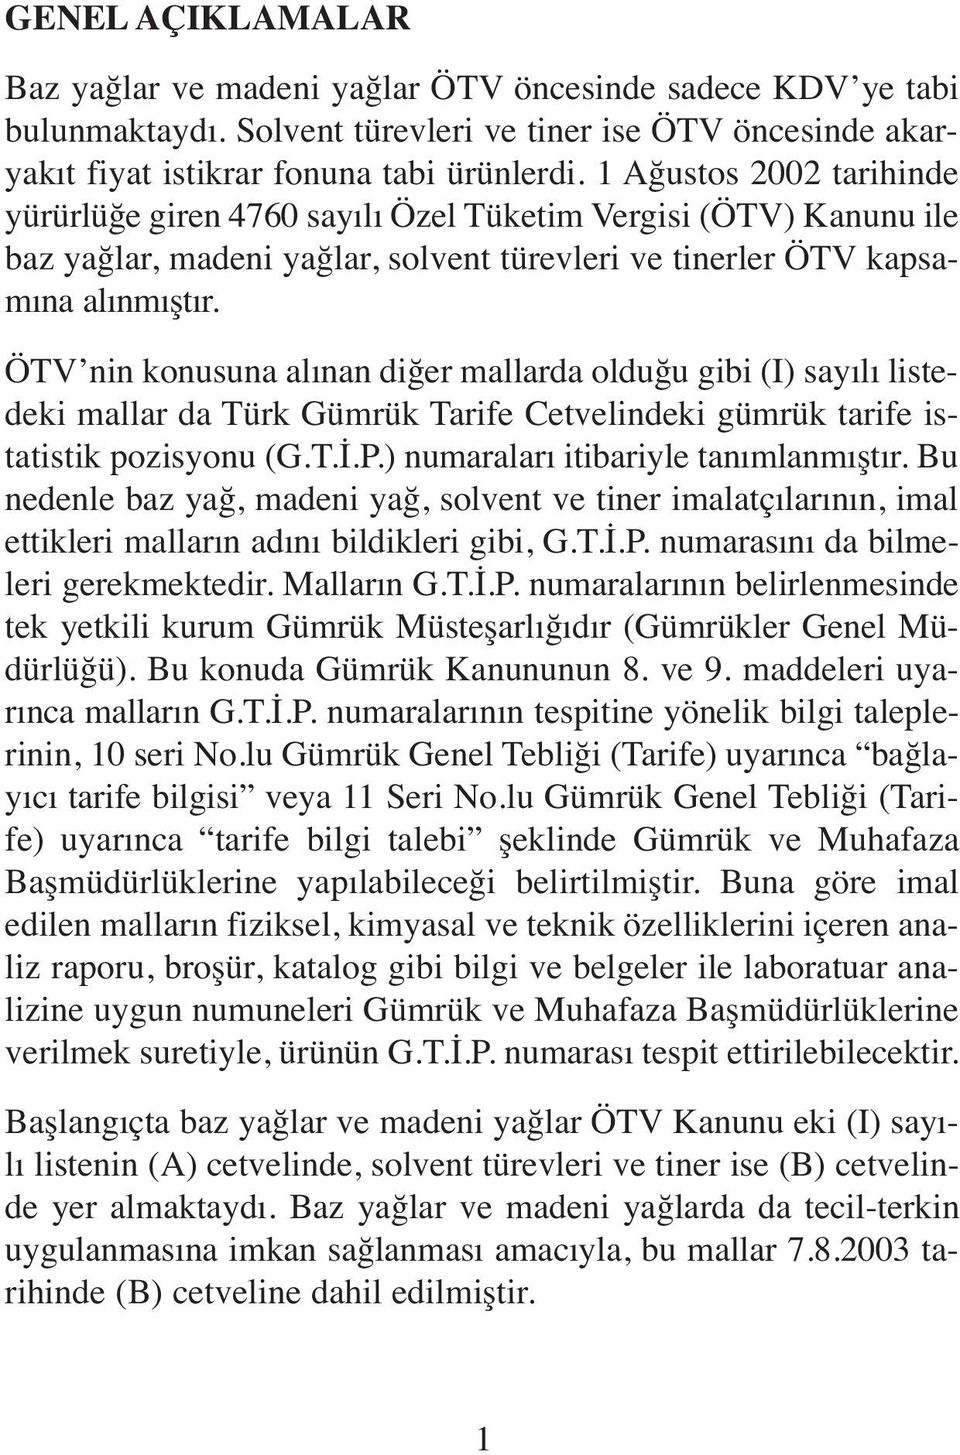 ÖTV nin konusuna alınan diğer mallarda olduğu gibi (I) sayılı listedeki mallar da Türk Gümrük Tarife Cetvelindeki gümrük tarife istatistik pozisyonu (G.T.İ.P.) numaraları itibariyle tanımlanmıştır.